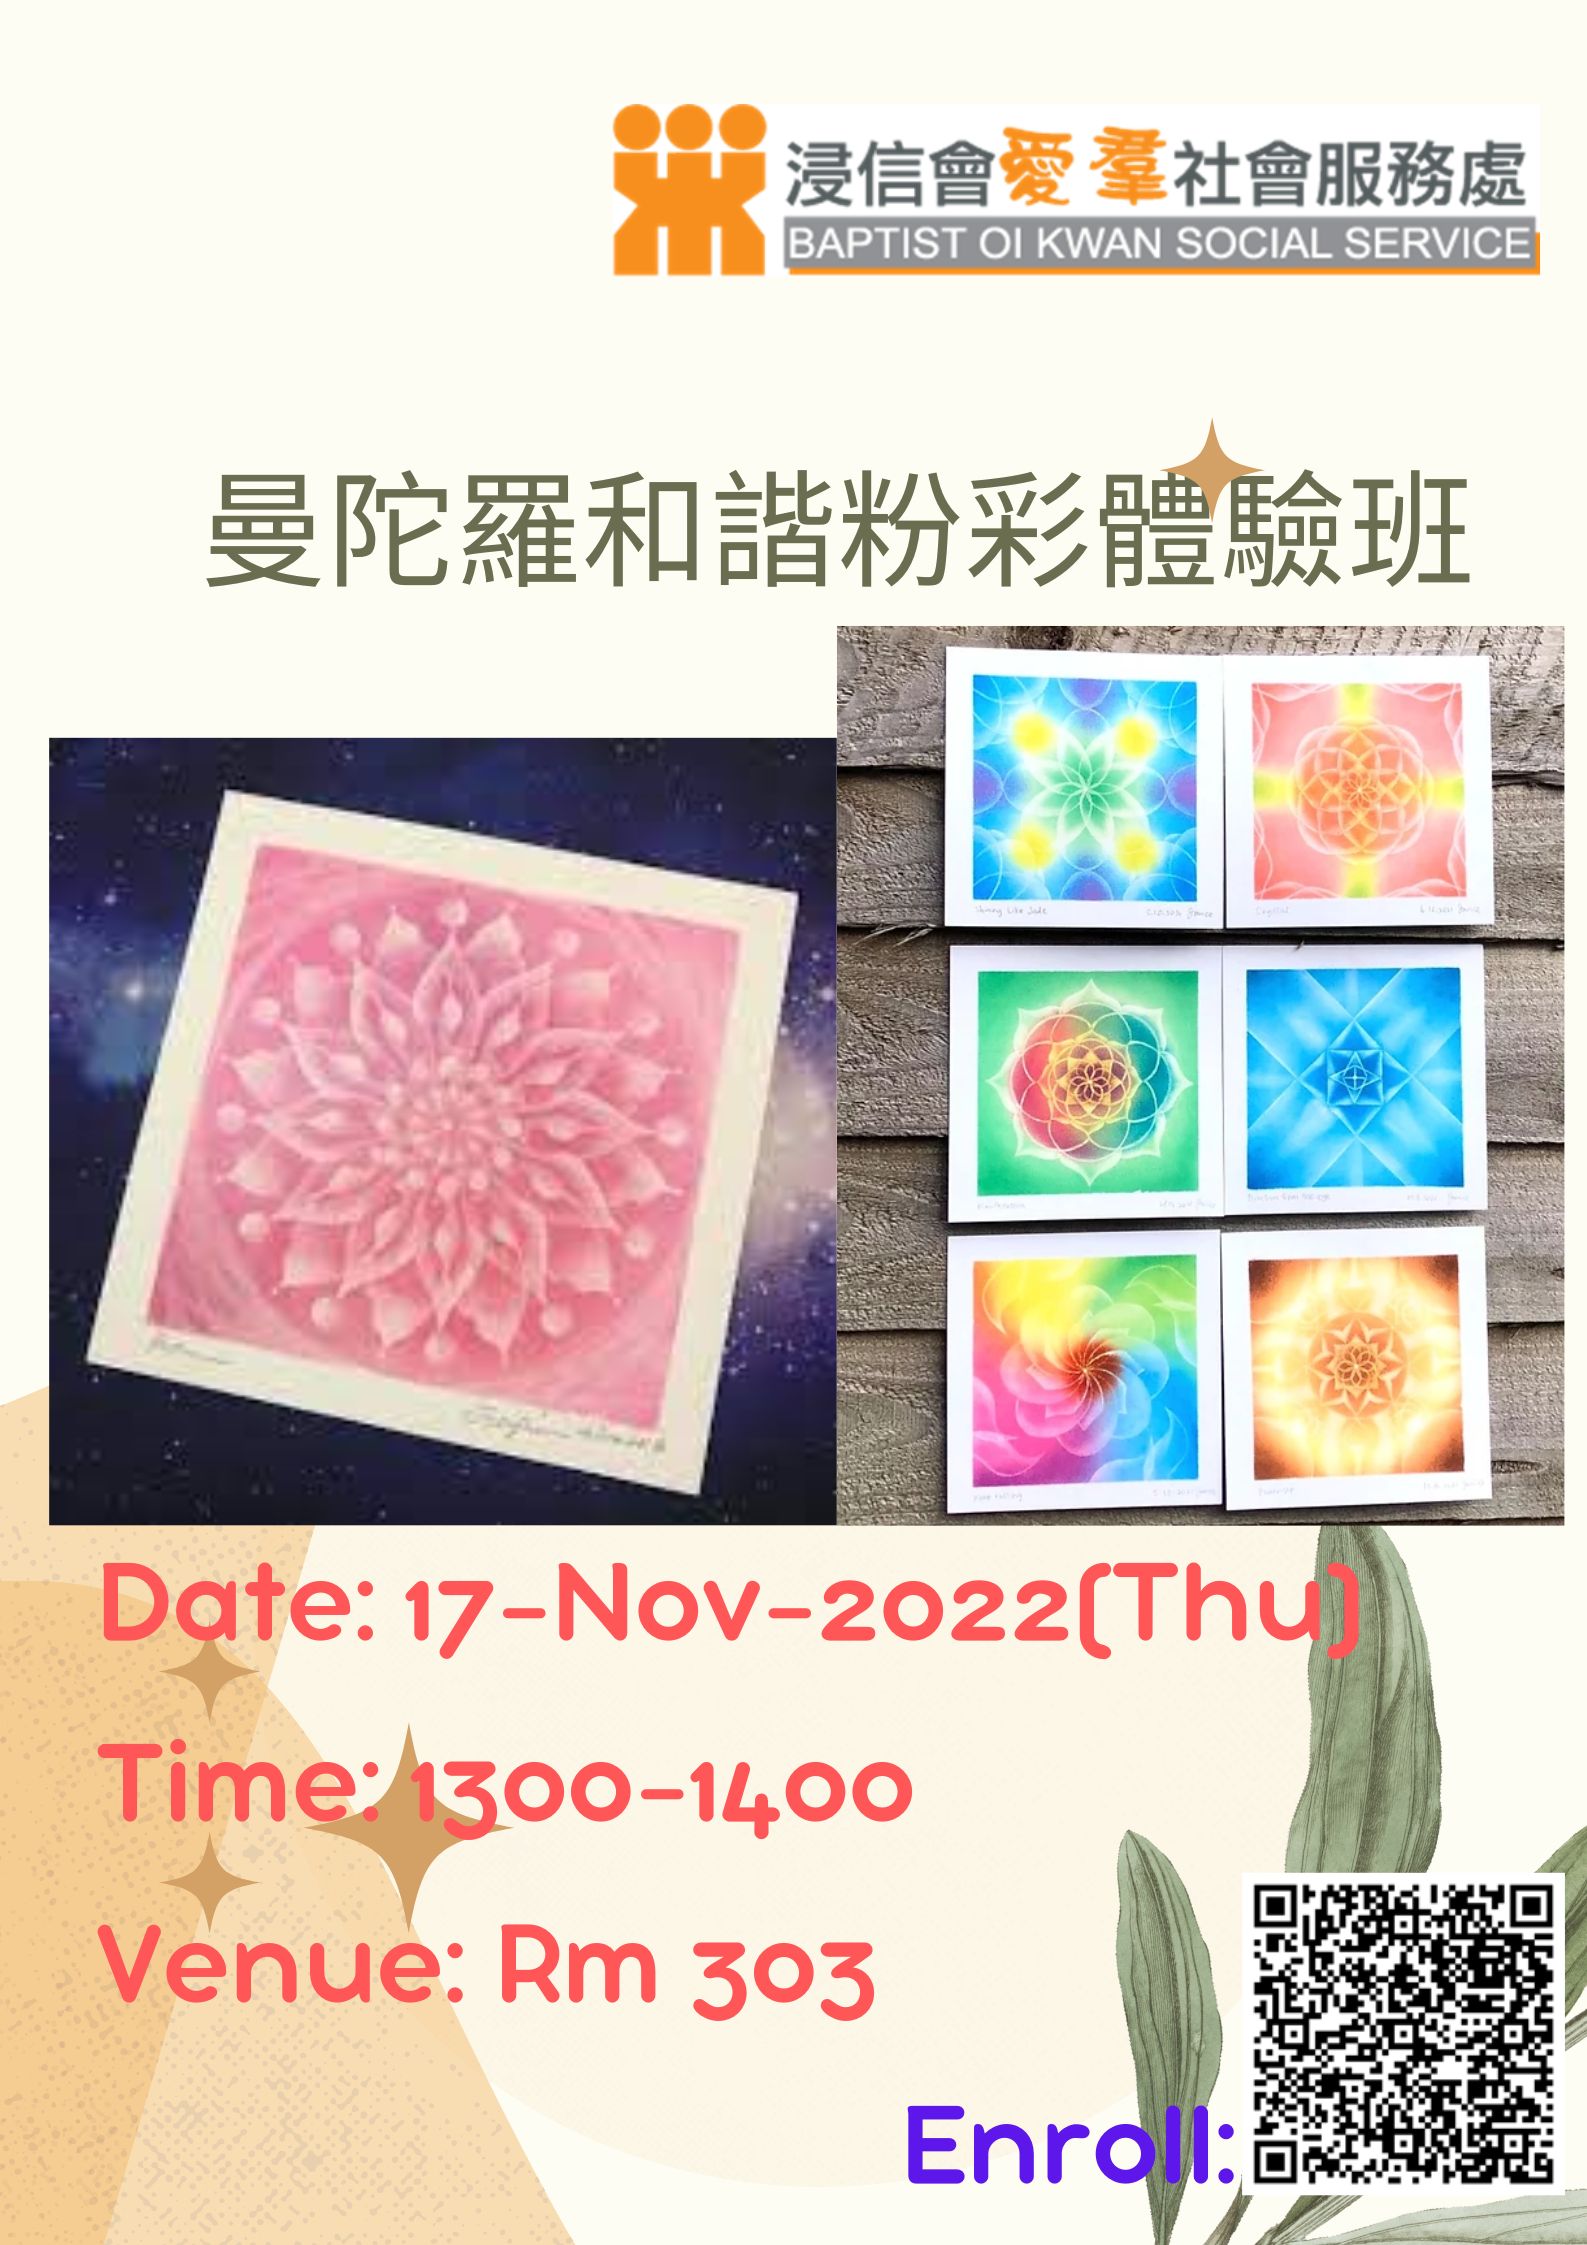 曼陀羅和諧粉彩體驗班  Nov 7, 2022 (Thu) 1300-1400 Rm 303  Fee: $20